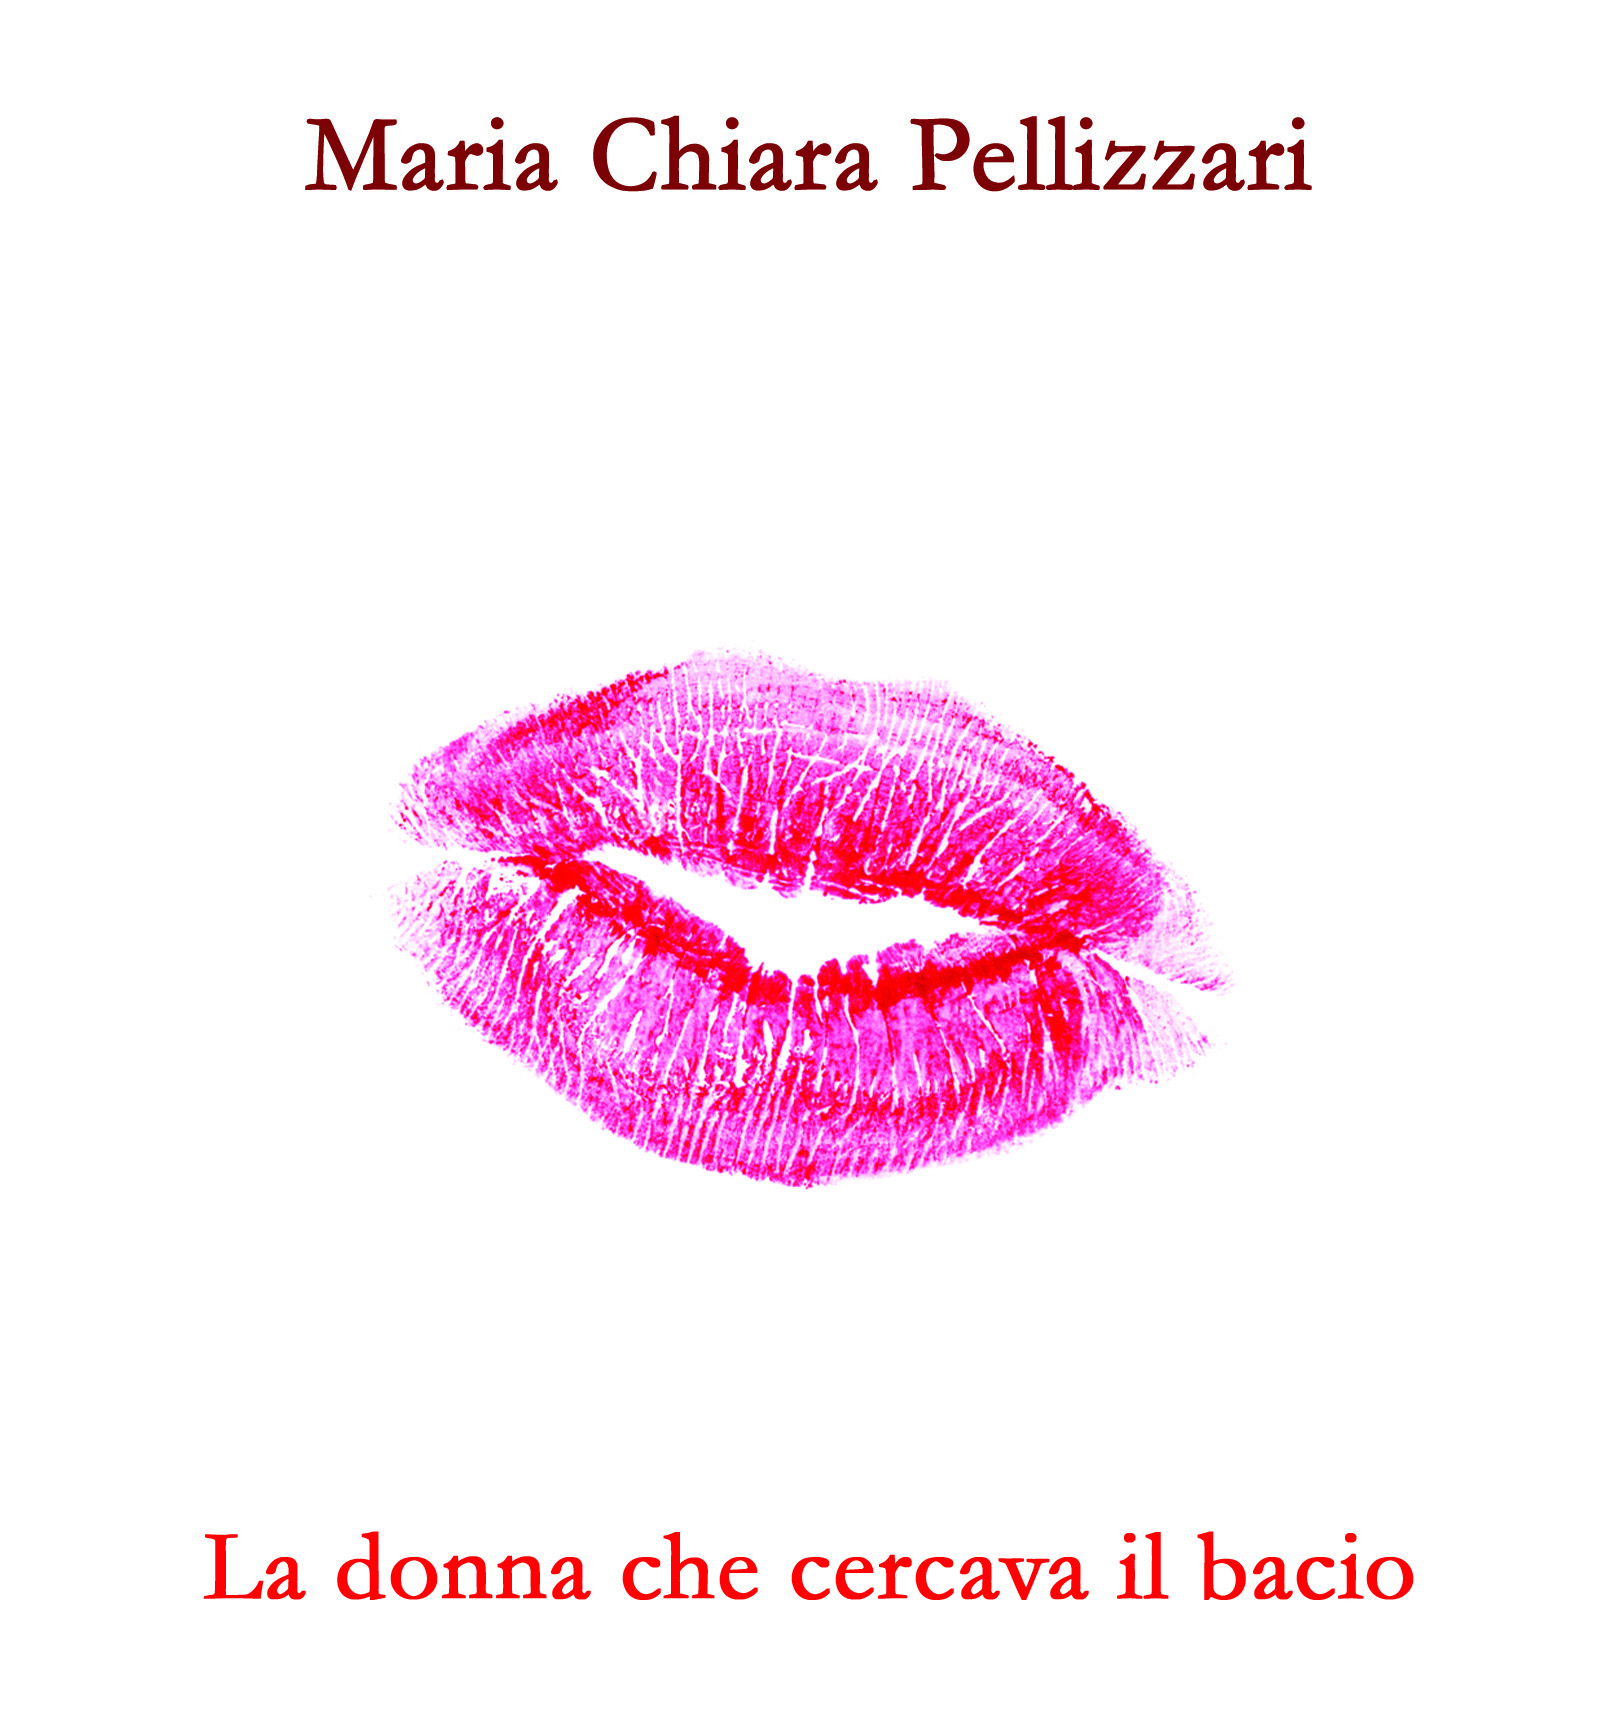 Maria Chiara Pellizzari: “La donna che cercava il bacio”